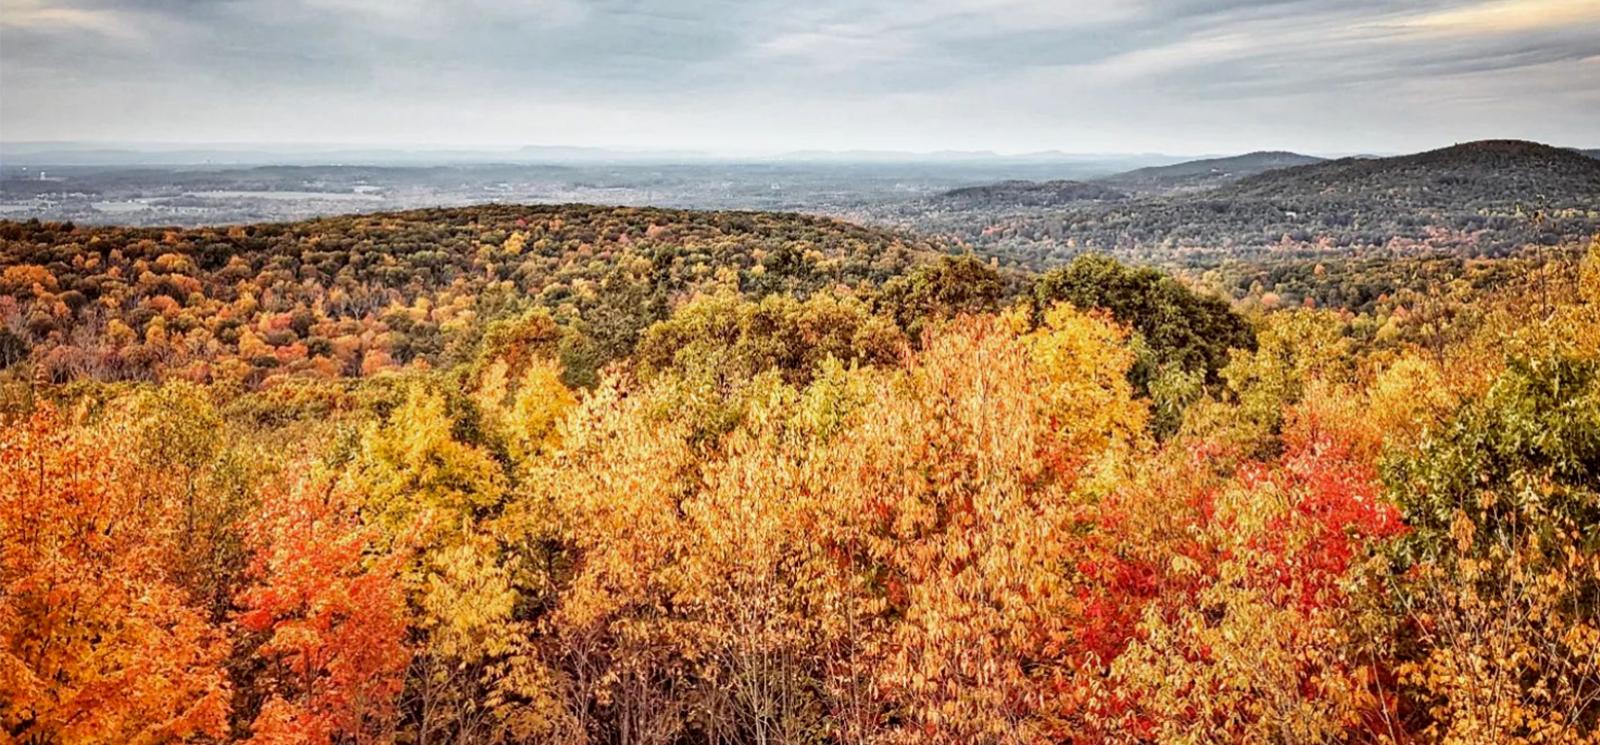 Cielo gris intenso sobre colinas ondulantes de follaje de otoño (Instagram@jessbiggs22)